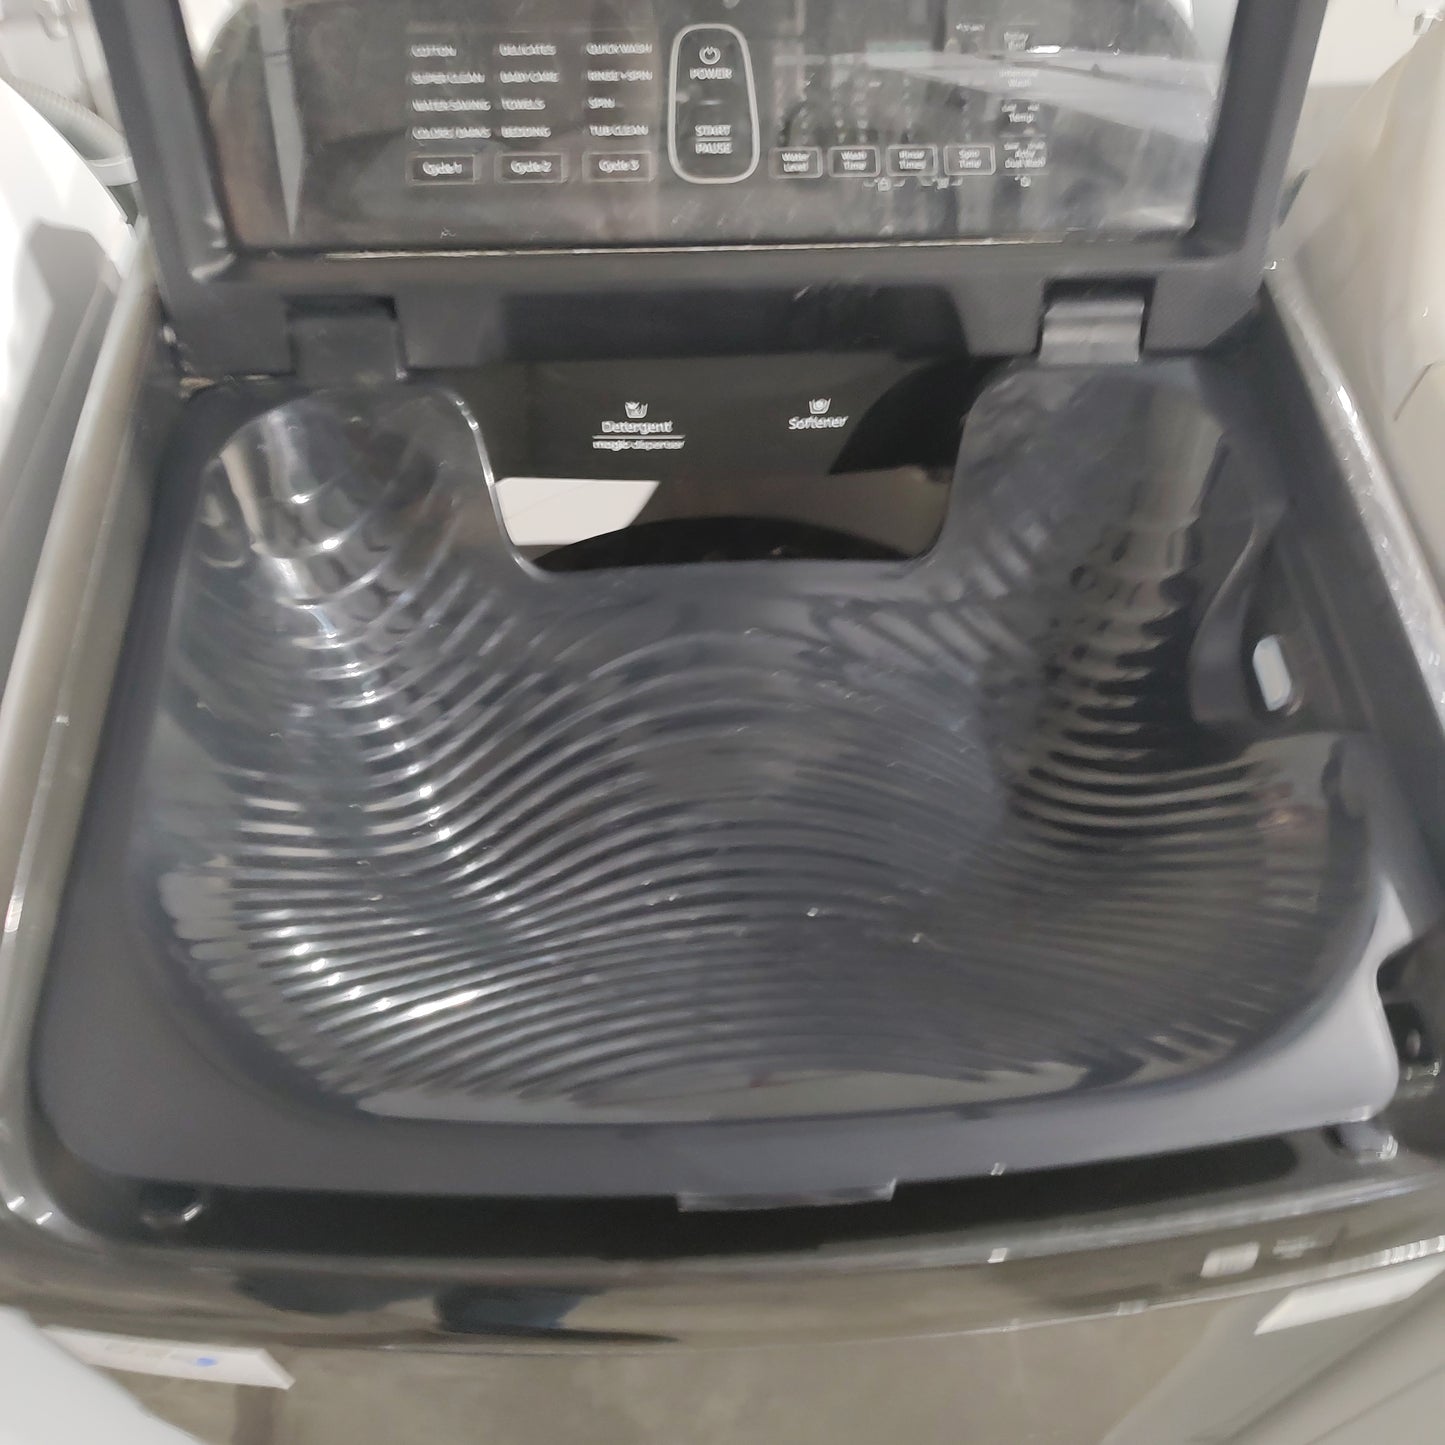 Samsung 8.5Kg Activ DualWash Top Load Washing Machine WA85N6750BV